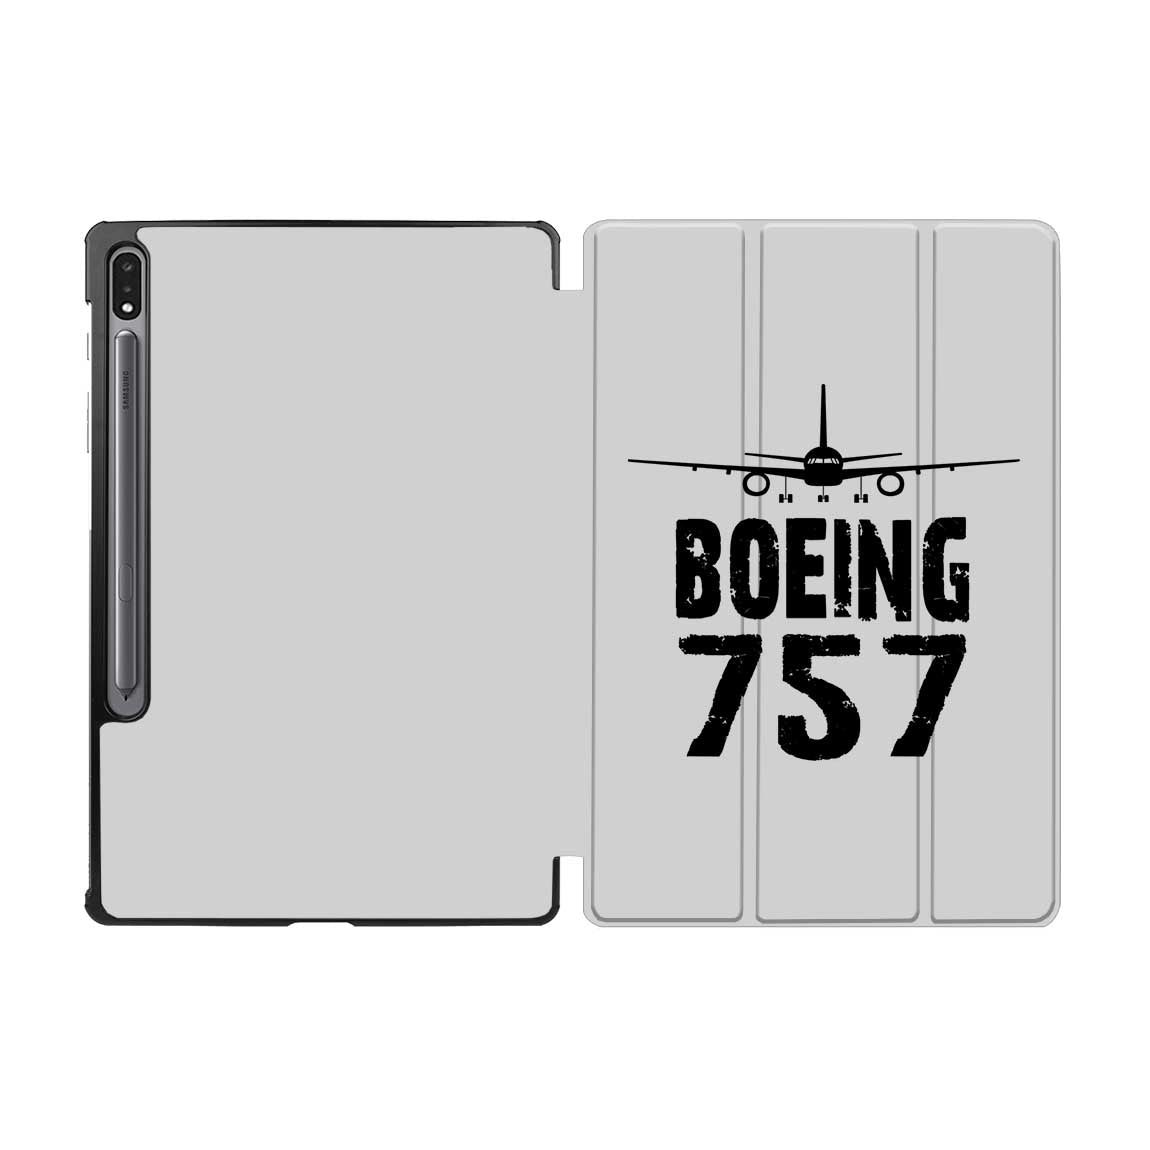 Boeing 757 & Plane Designed Samsung Tablet Cases